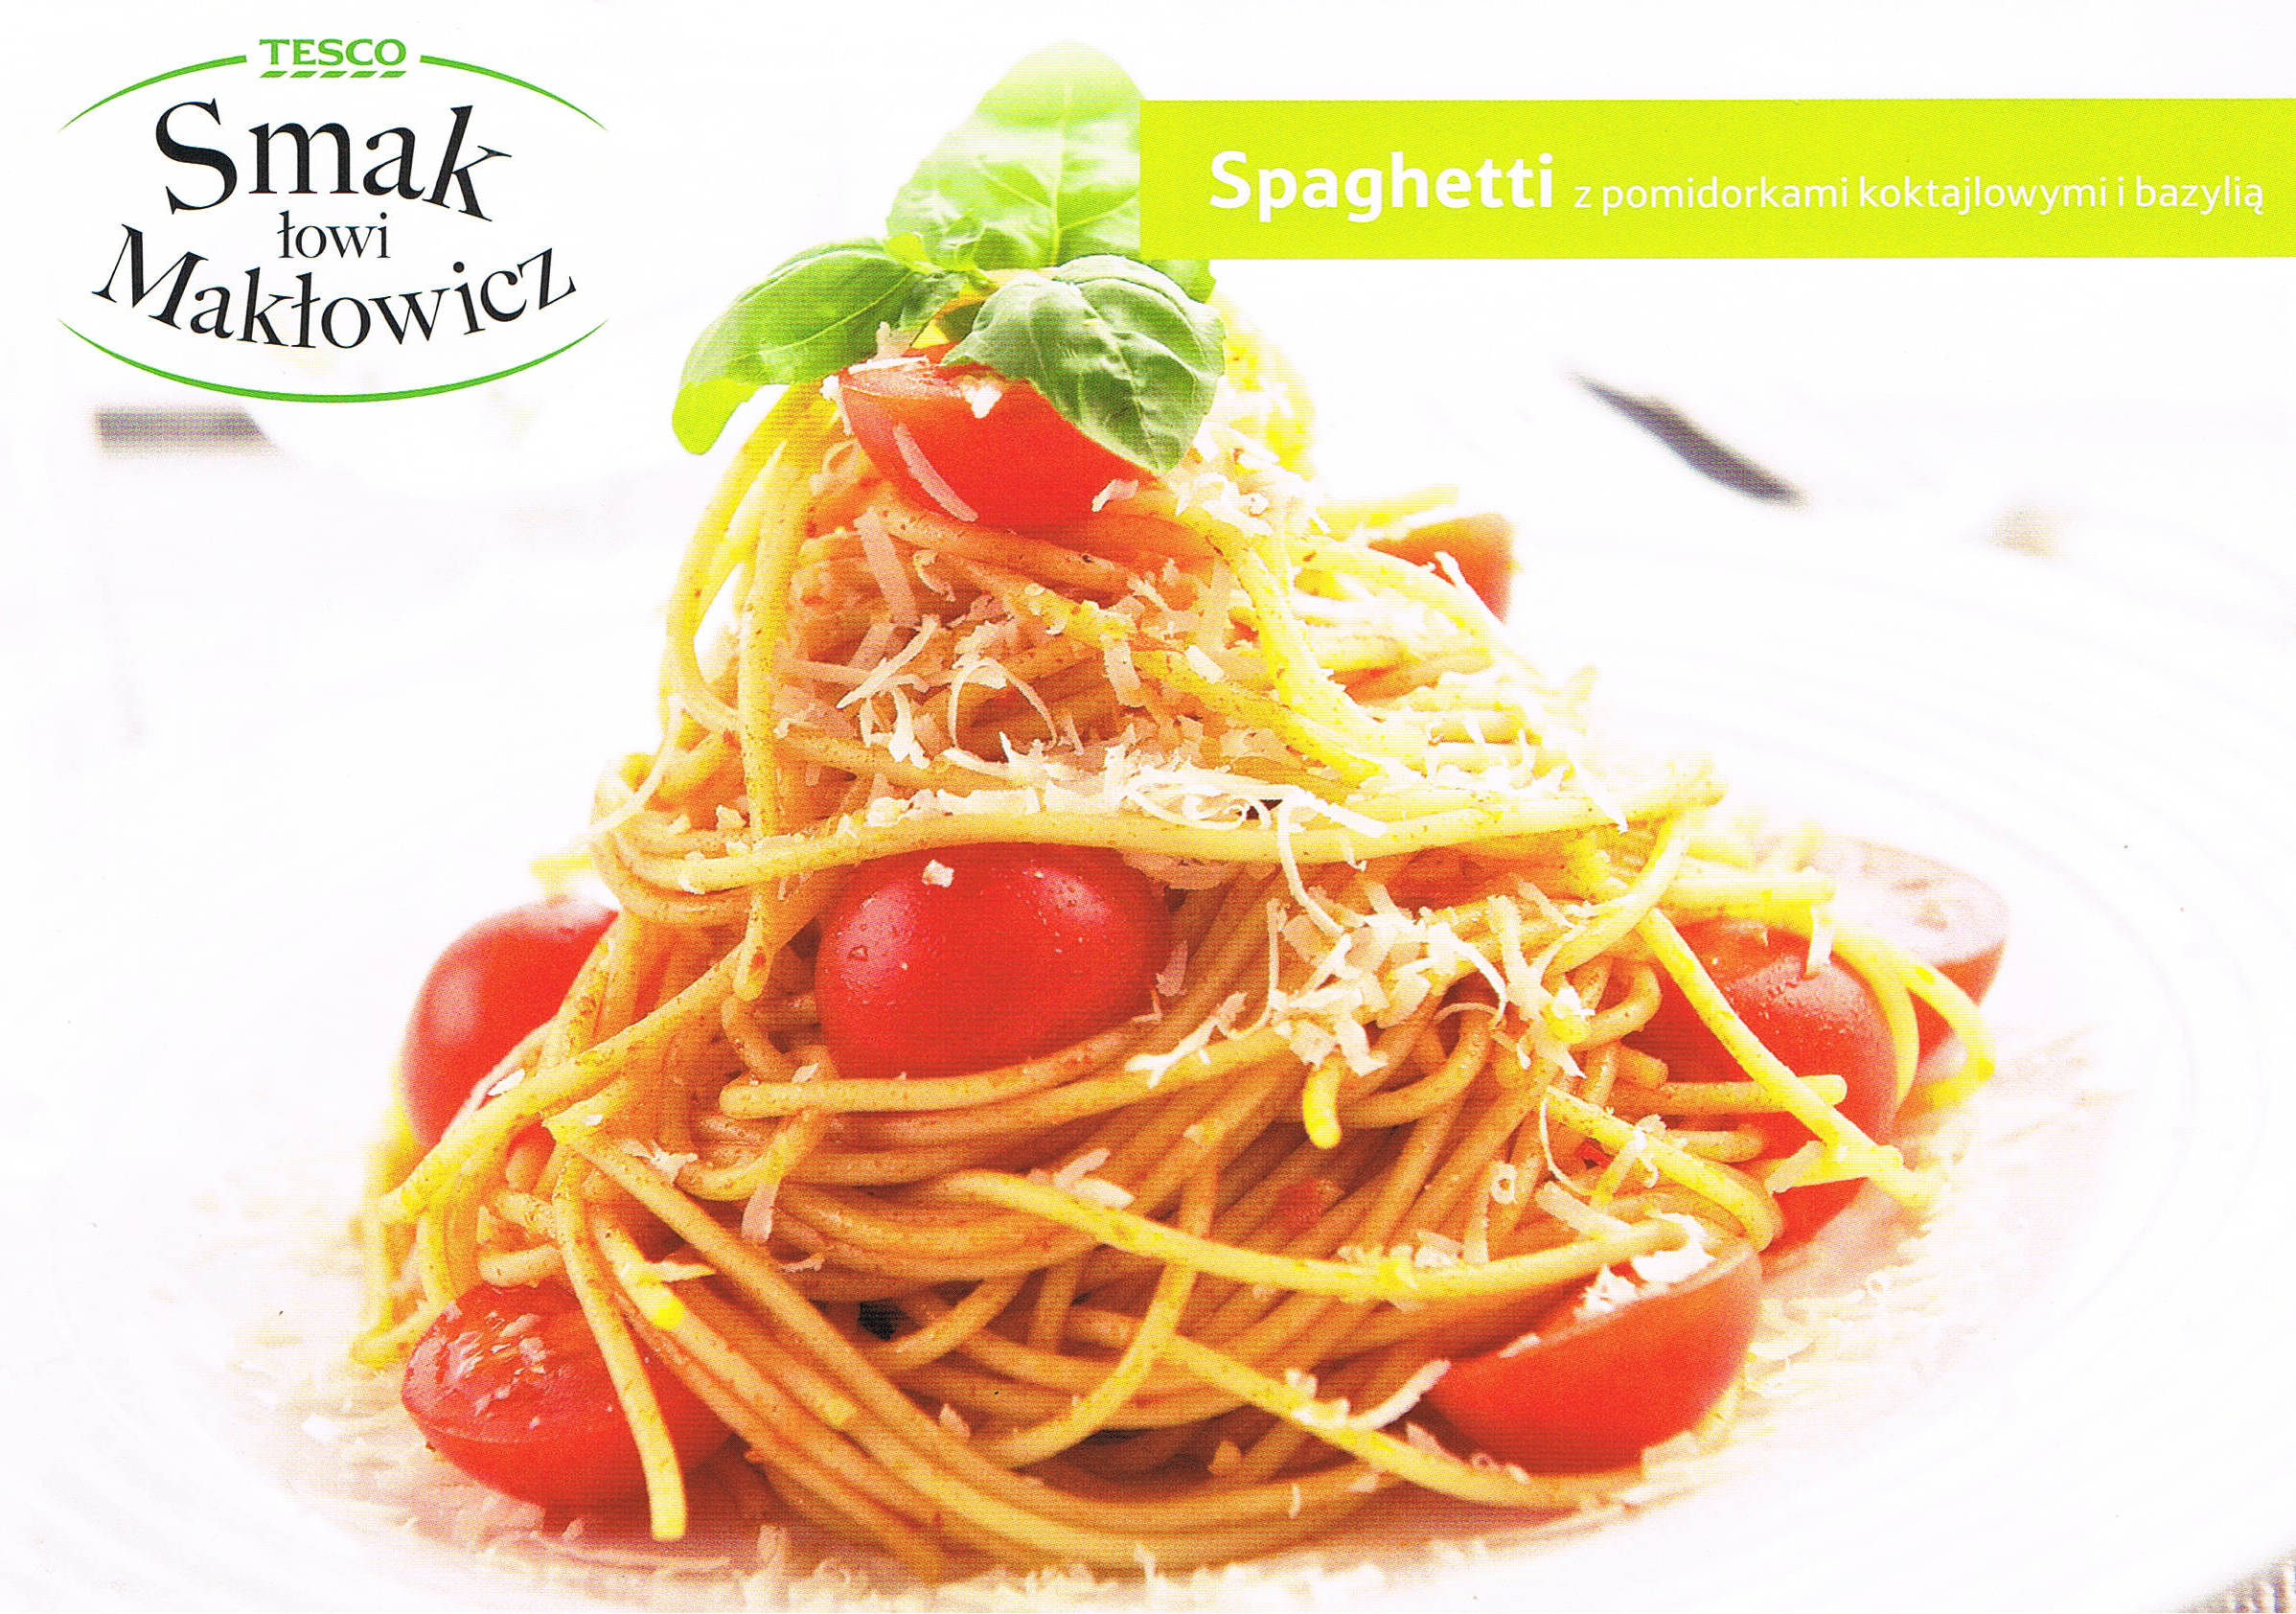 PRZEPISY KULINARNE - spaghetti z pomidorami koktajlowymi i bazylią 1.jpg